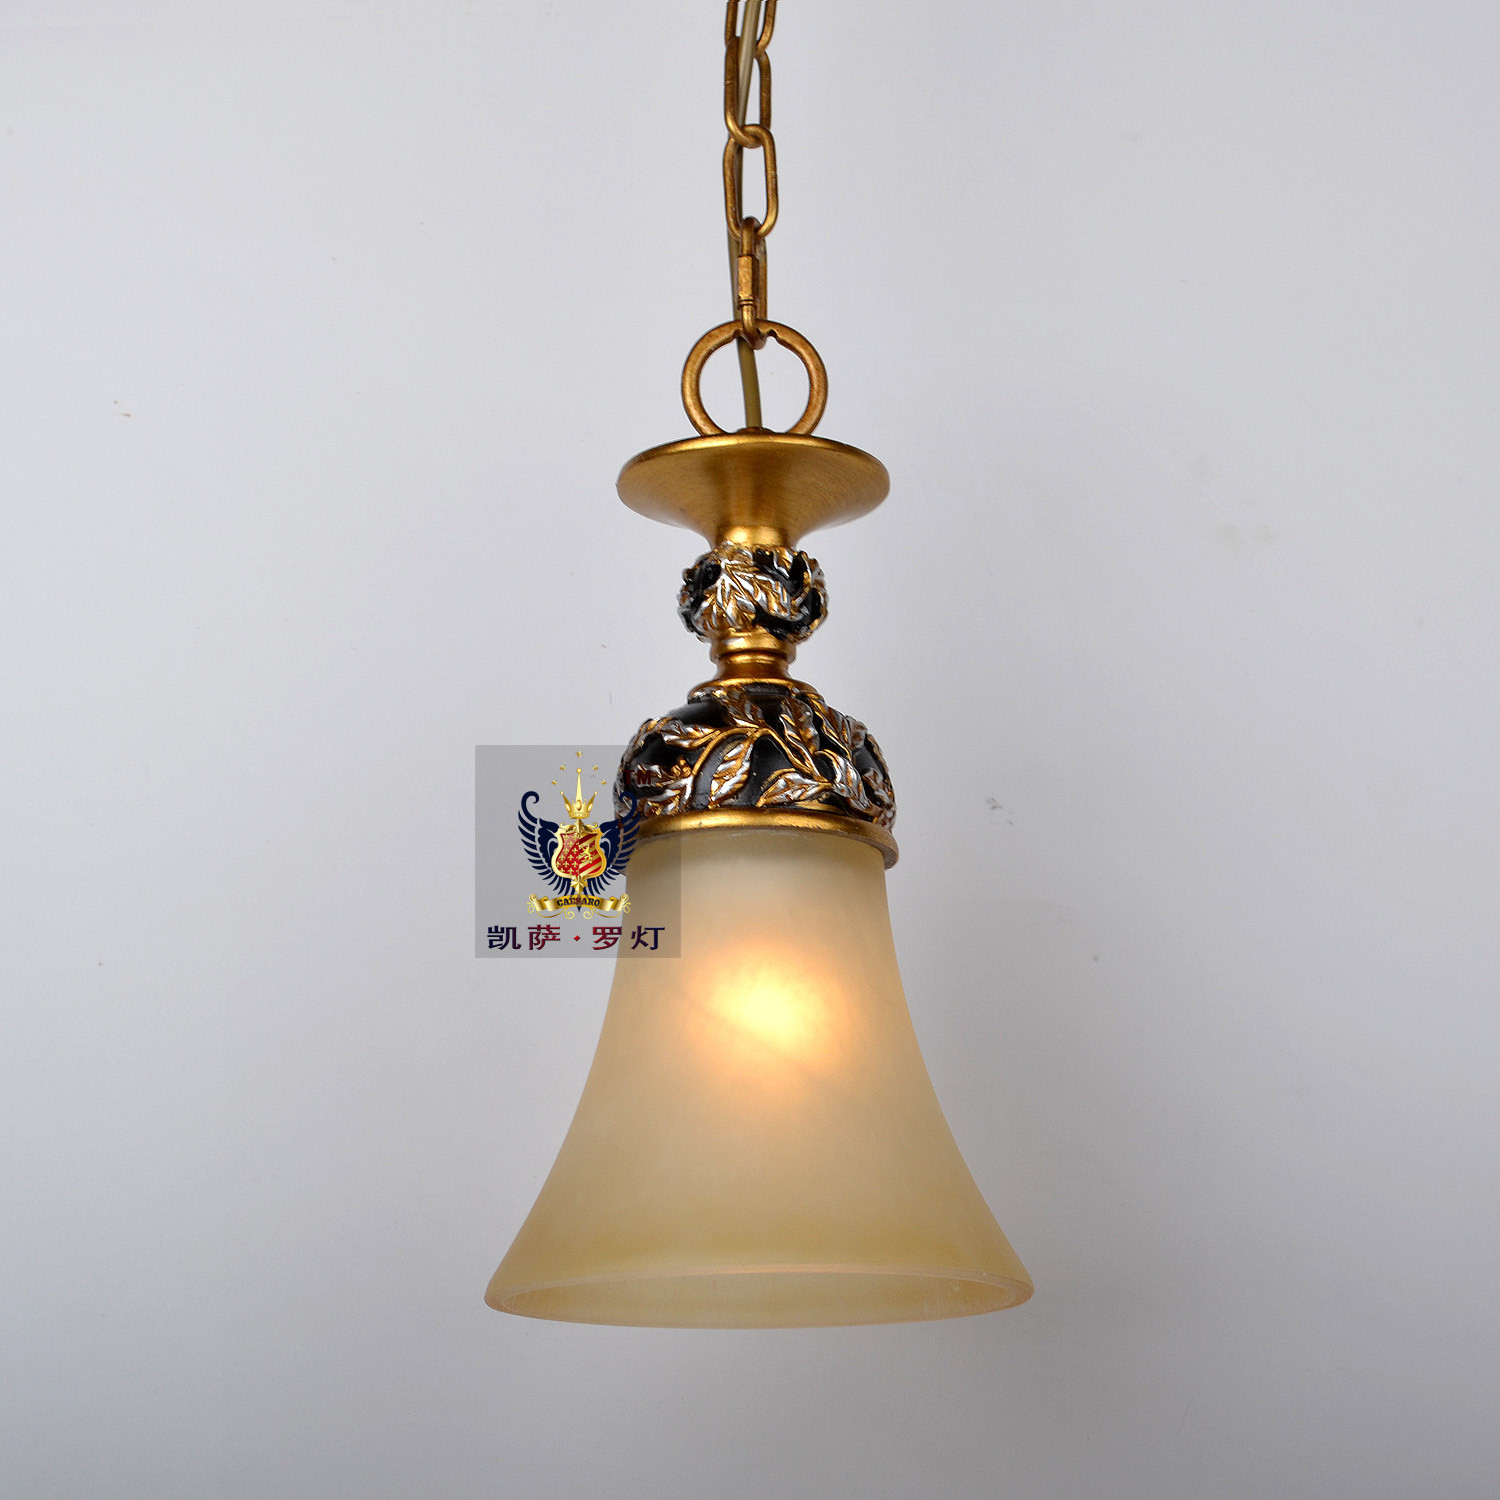 凯萨·罗灯 红古铜+黑色玻璃树脂欧式镂空雕花白炽灯节能灯 吊灯